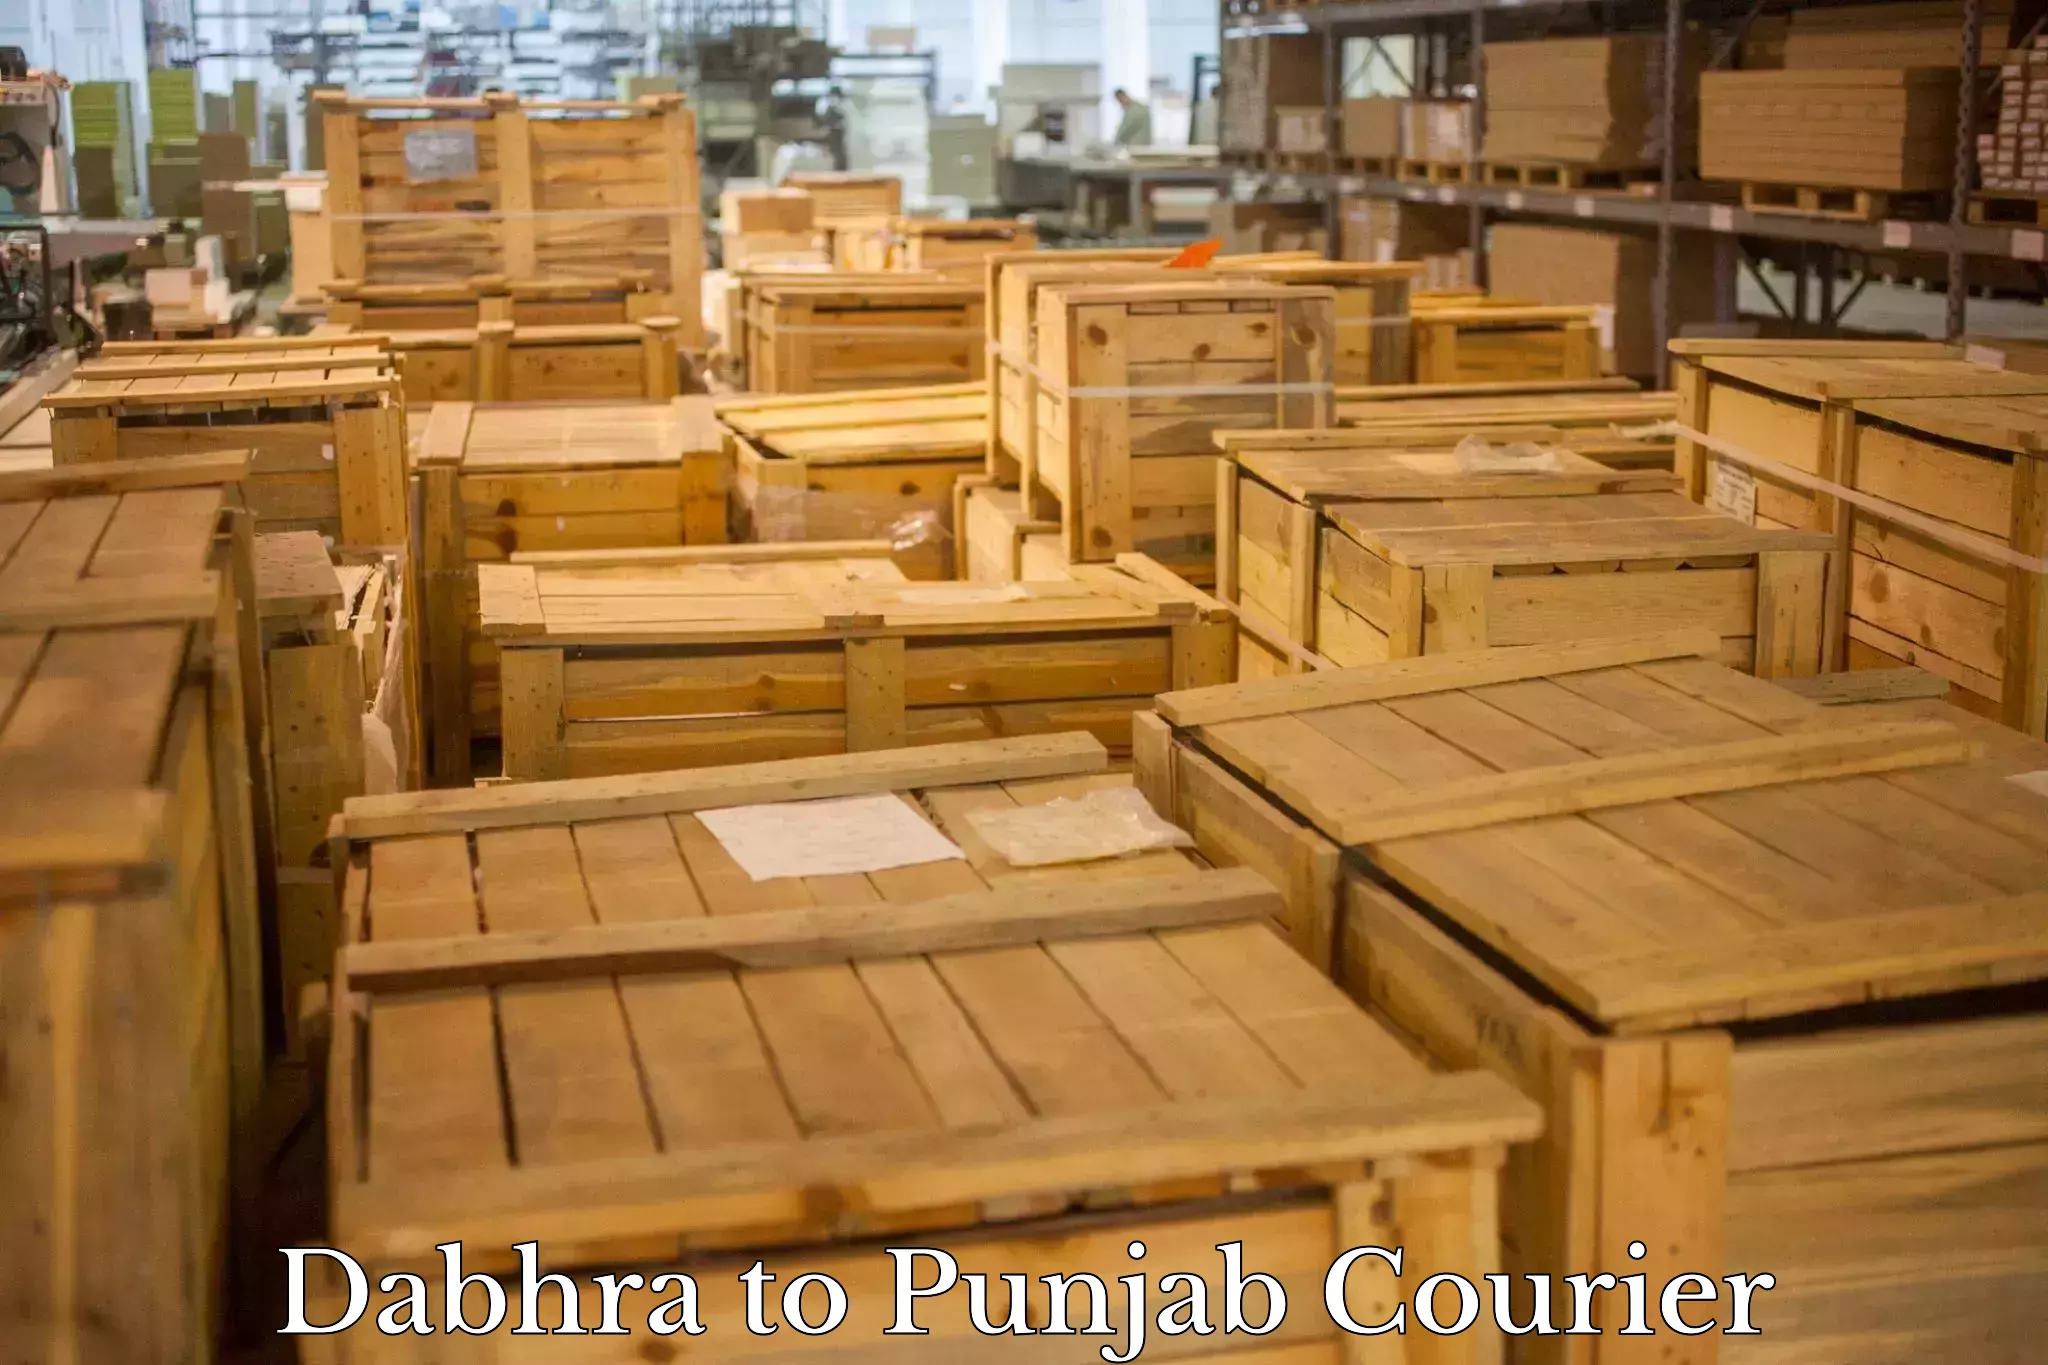 Digital courier platforms Dabhra to Rajpura